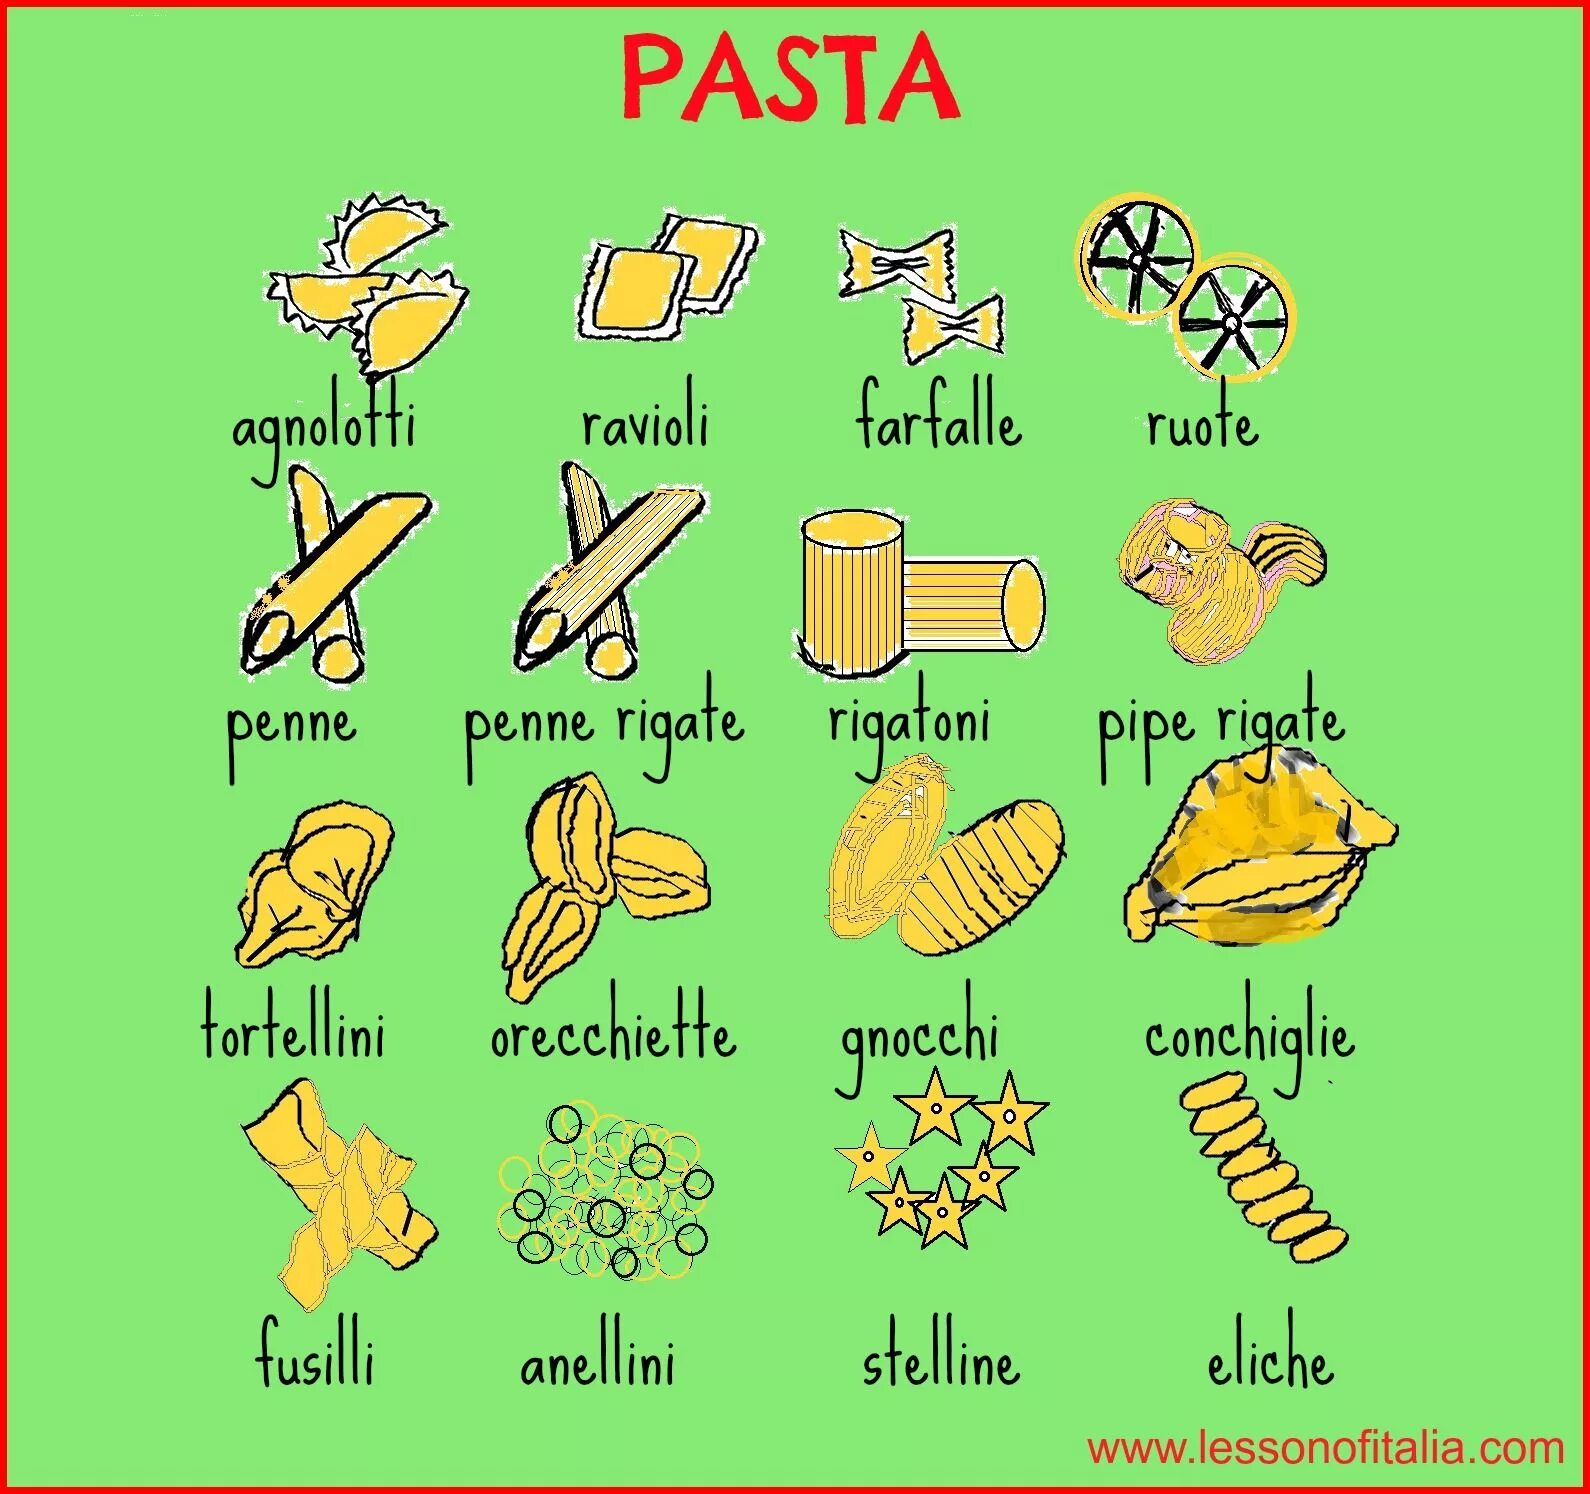 Итальянская лексика. Еда на итальянском языке. Продукты на итальянском языке. Итальянский в картинках для изучения. Итальянские слова.